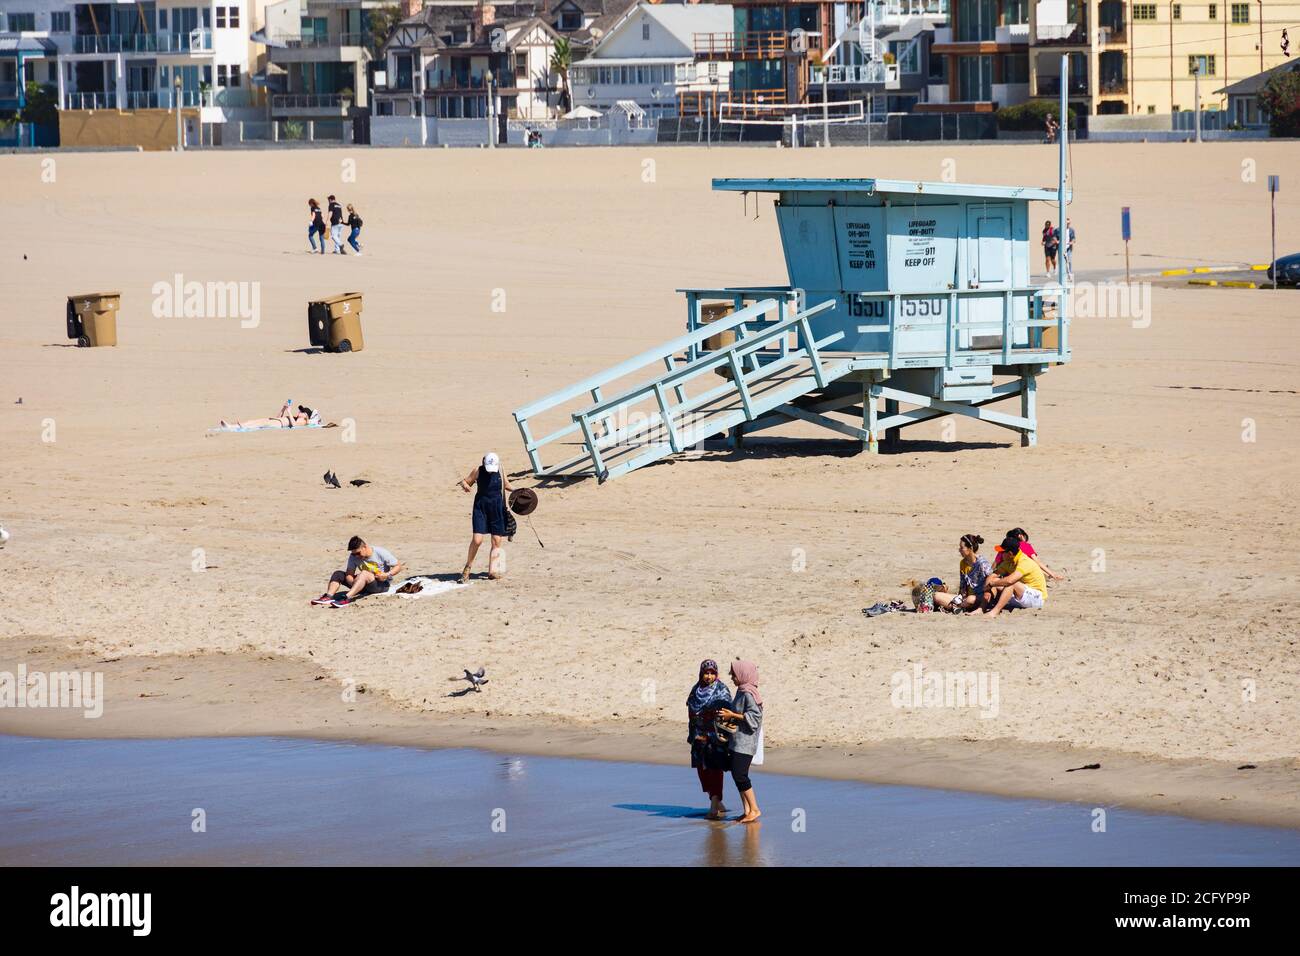 Touristen am Strand, mit Rettungsschwimmer Hütte, Santa Monica, Kalifornien, Vereinigte Staaten von amerika. USA. Oktober 2019 Stockfoto